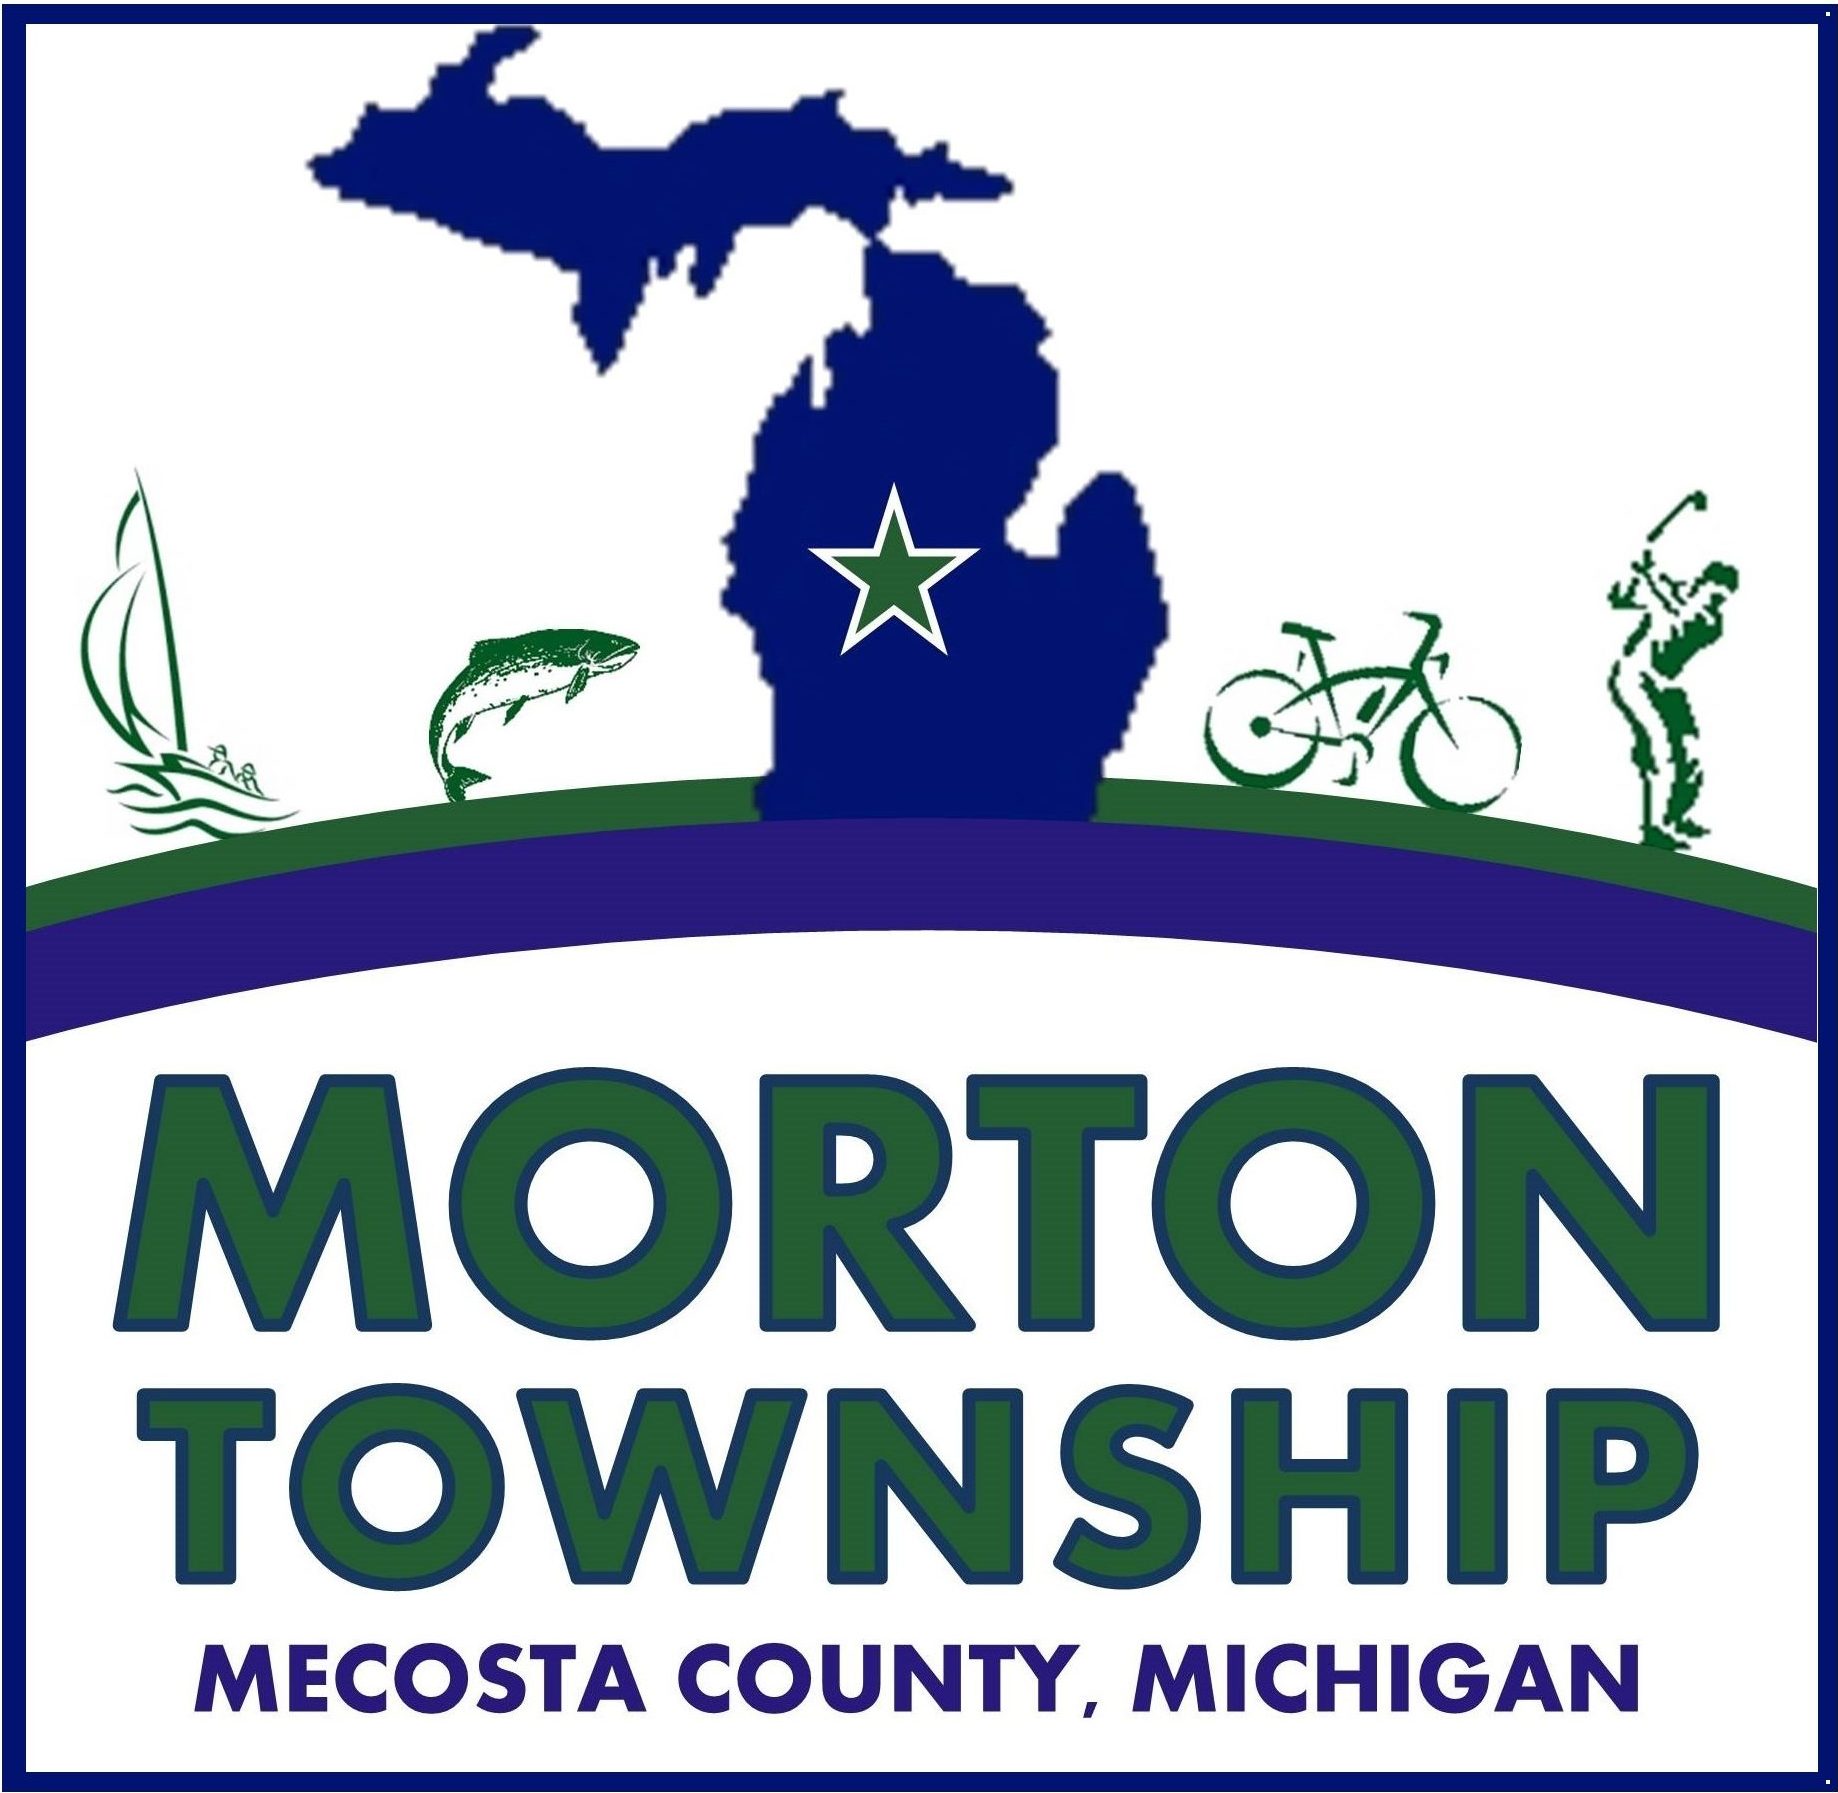 Morton Township